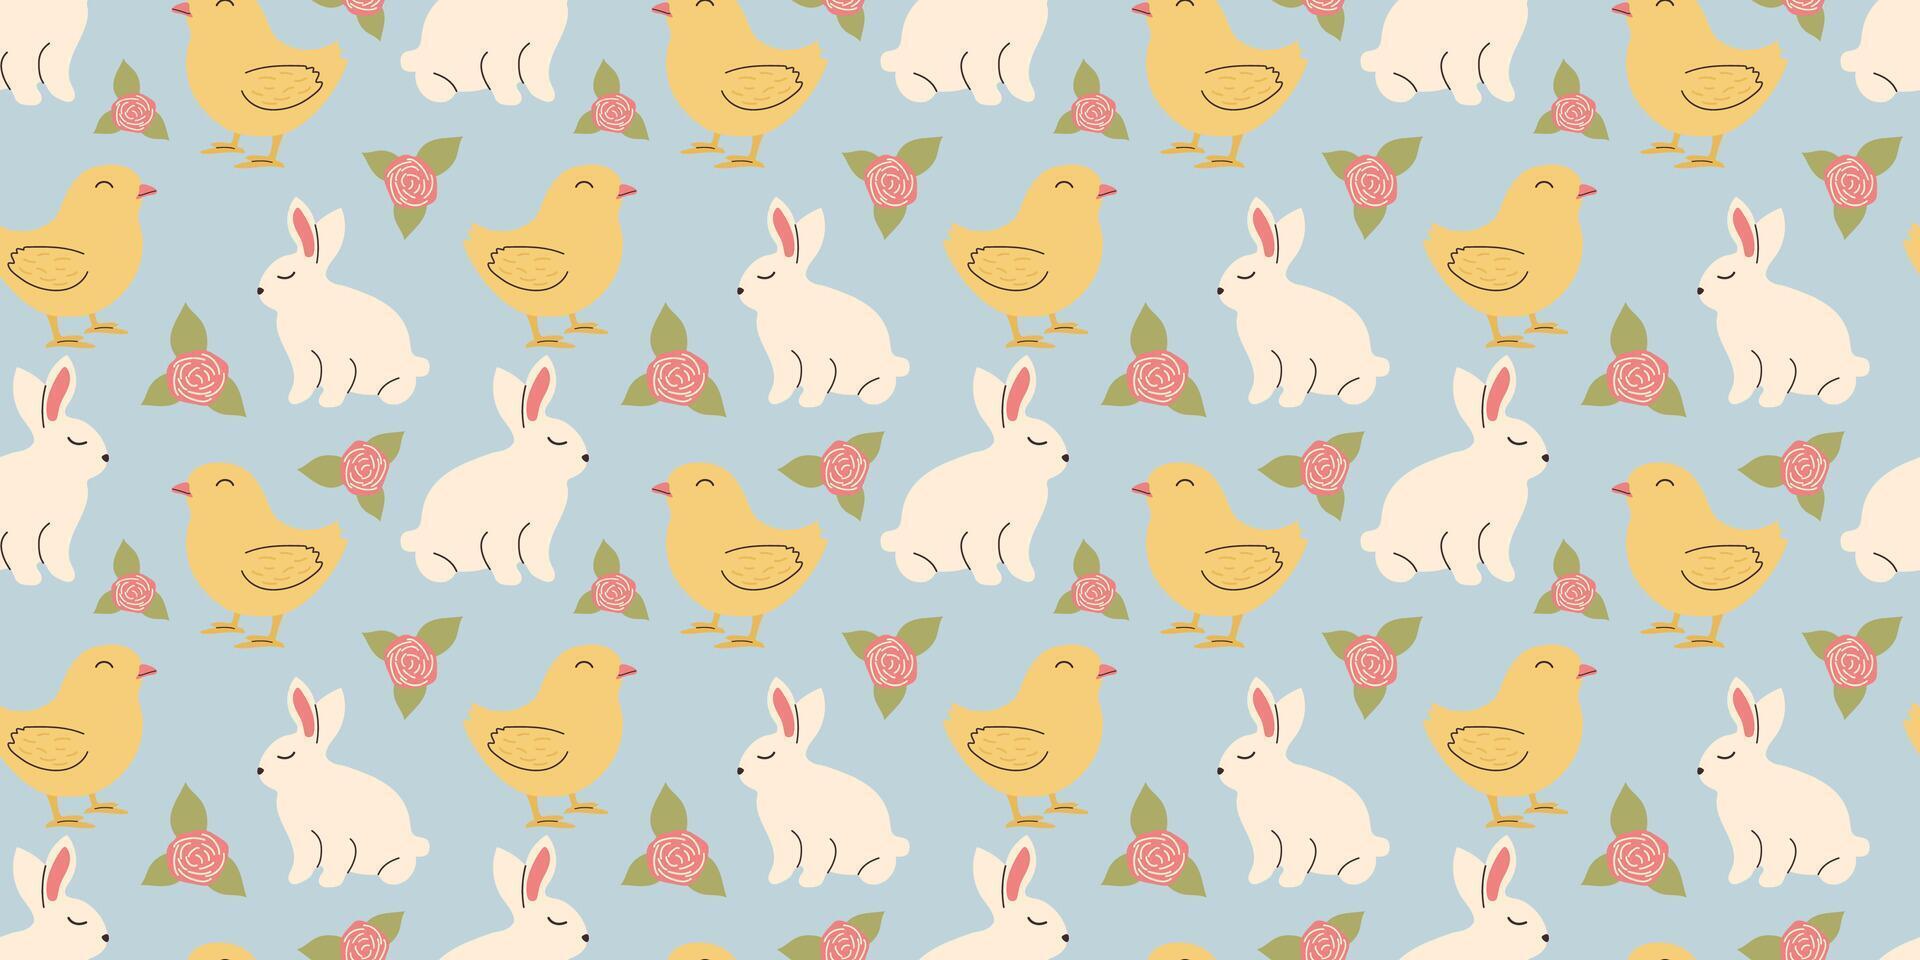 söt påsk mönster med kaniner, kycklingar och blommor i pastell färger. sömlös design i klotter stil. ändlös illustration med djur. vit kaniner med botanisk element på blå bakgrund vektor